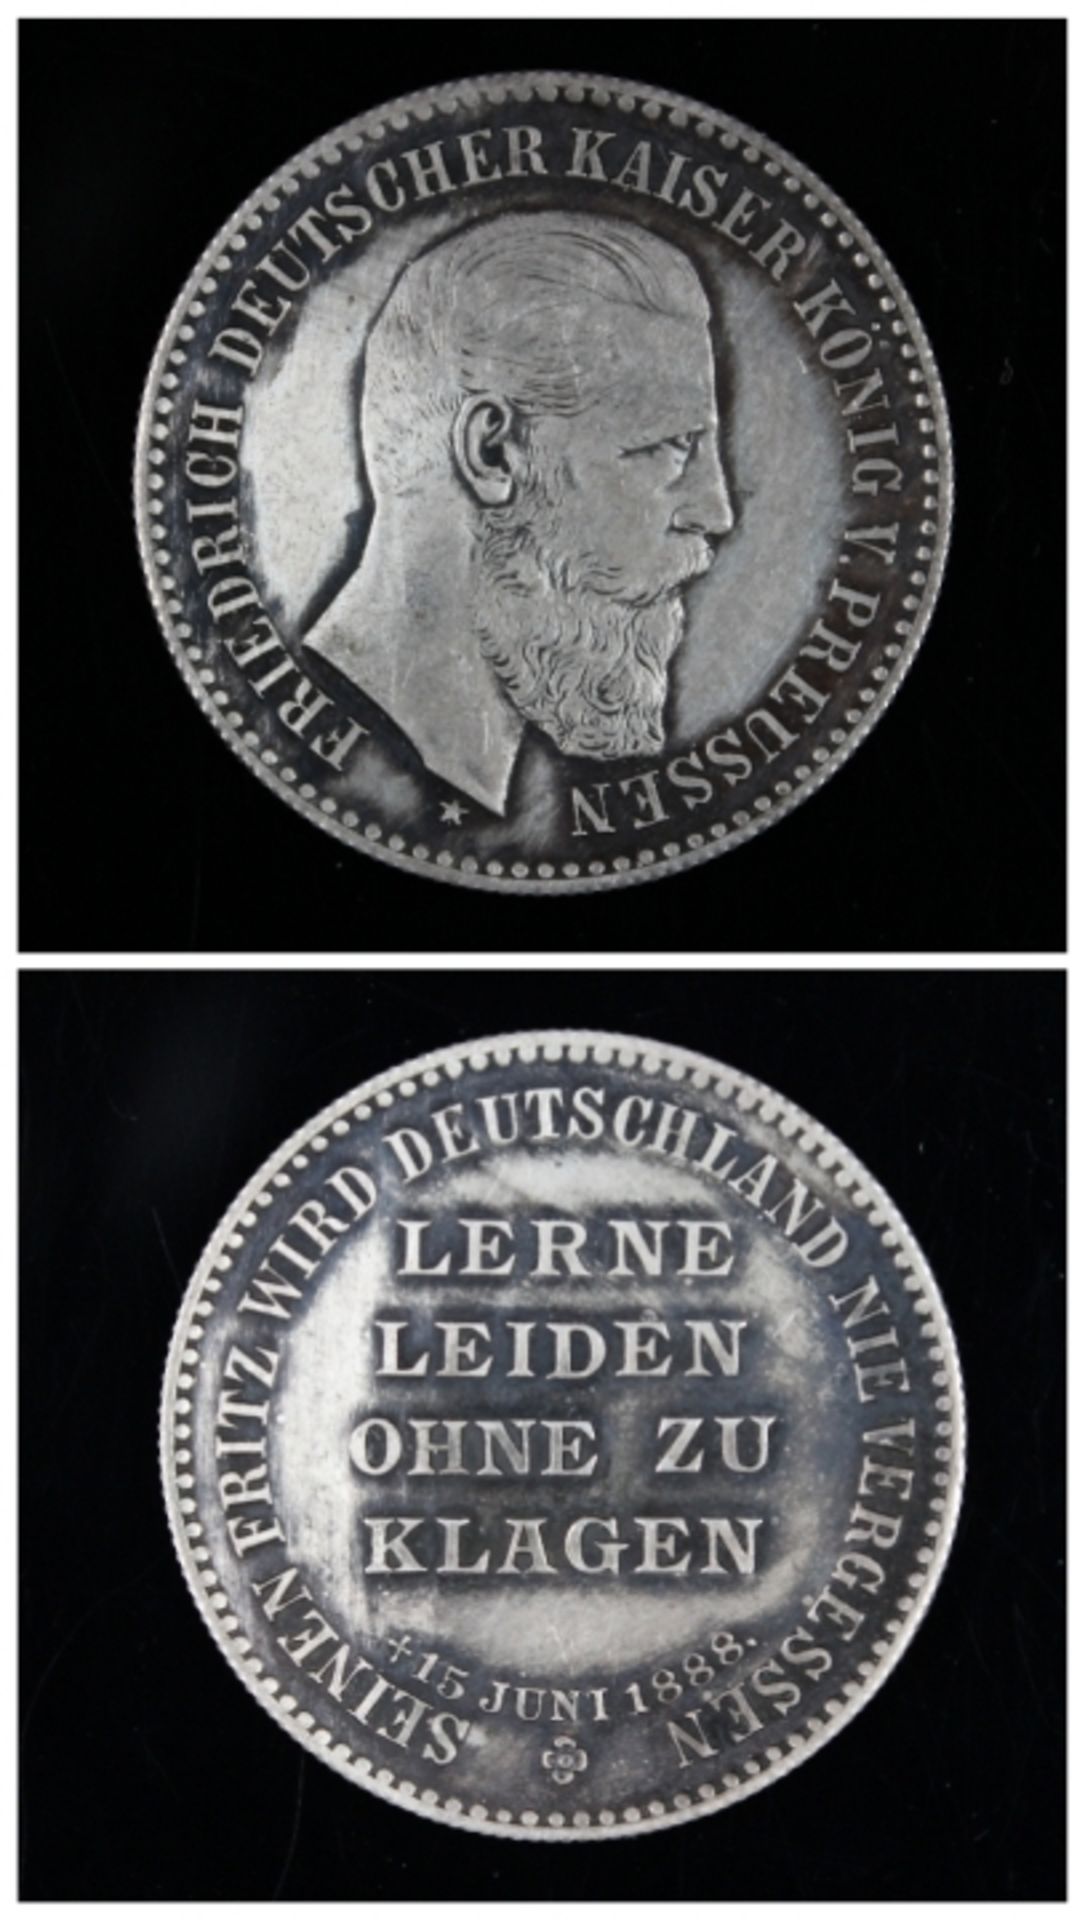 Silbermedaille Preussen 15.7.1888, seinen Fritz wird Deutschland nie vergessen, Spruch " Lerne